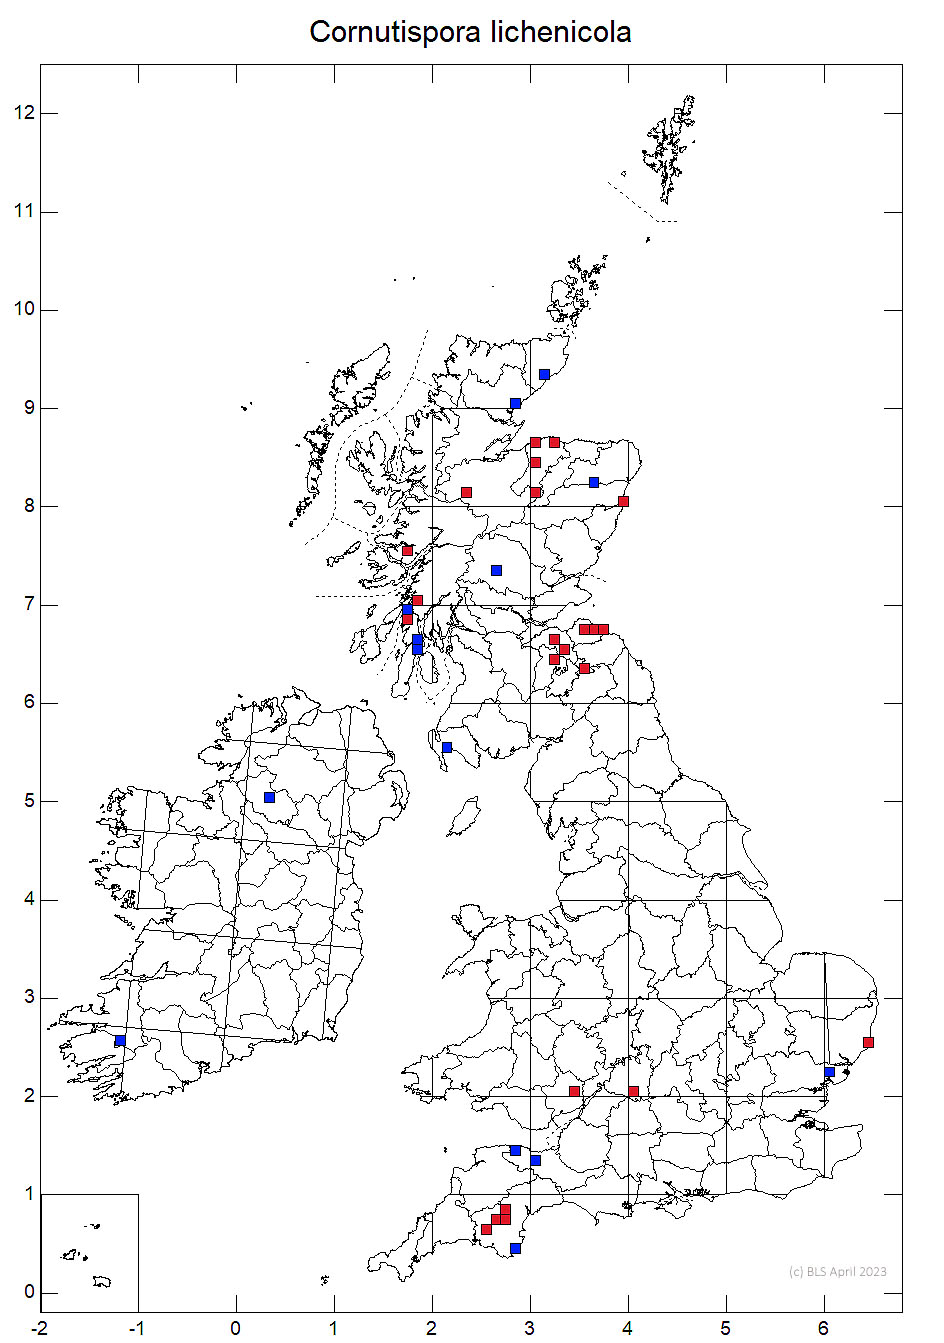 Cornutispora lichenicola 10km sq distribution map